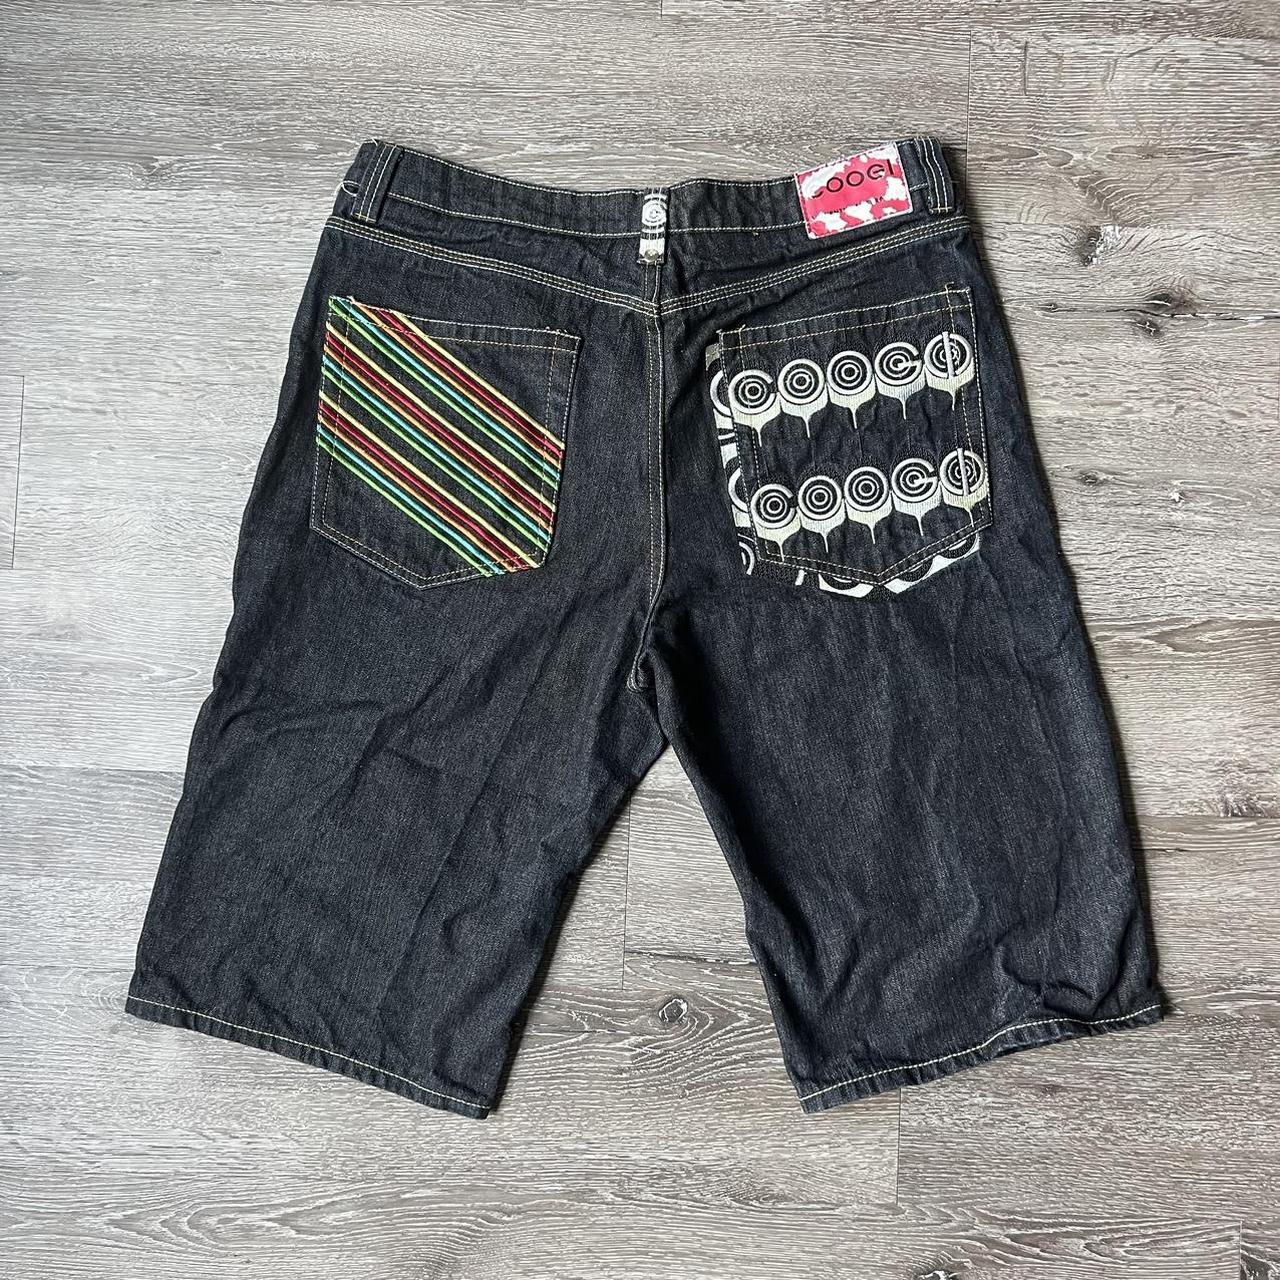 Vintage Coogi jean shorts Jorts - Depop